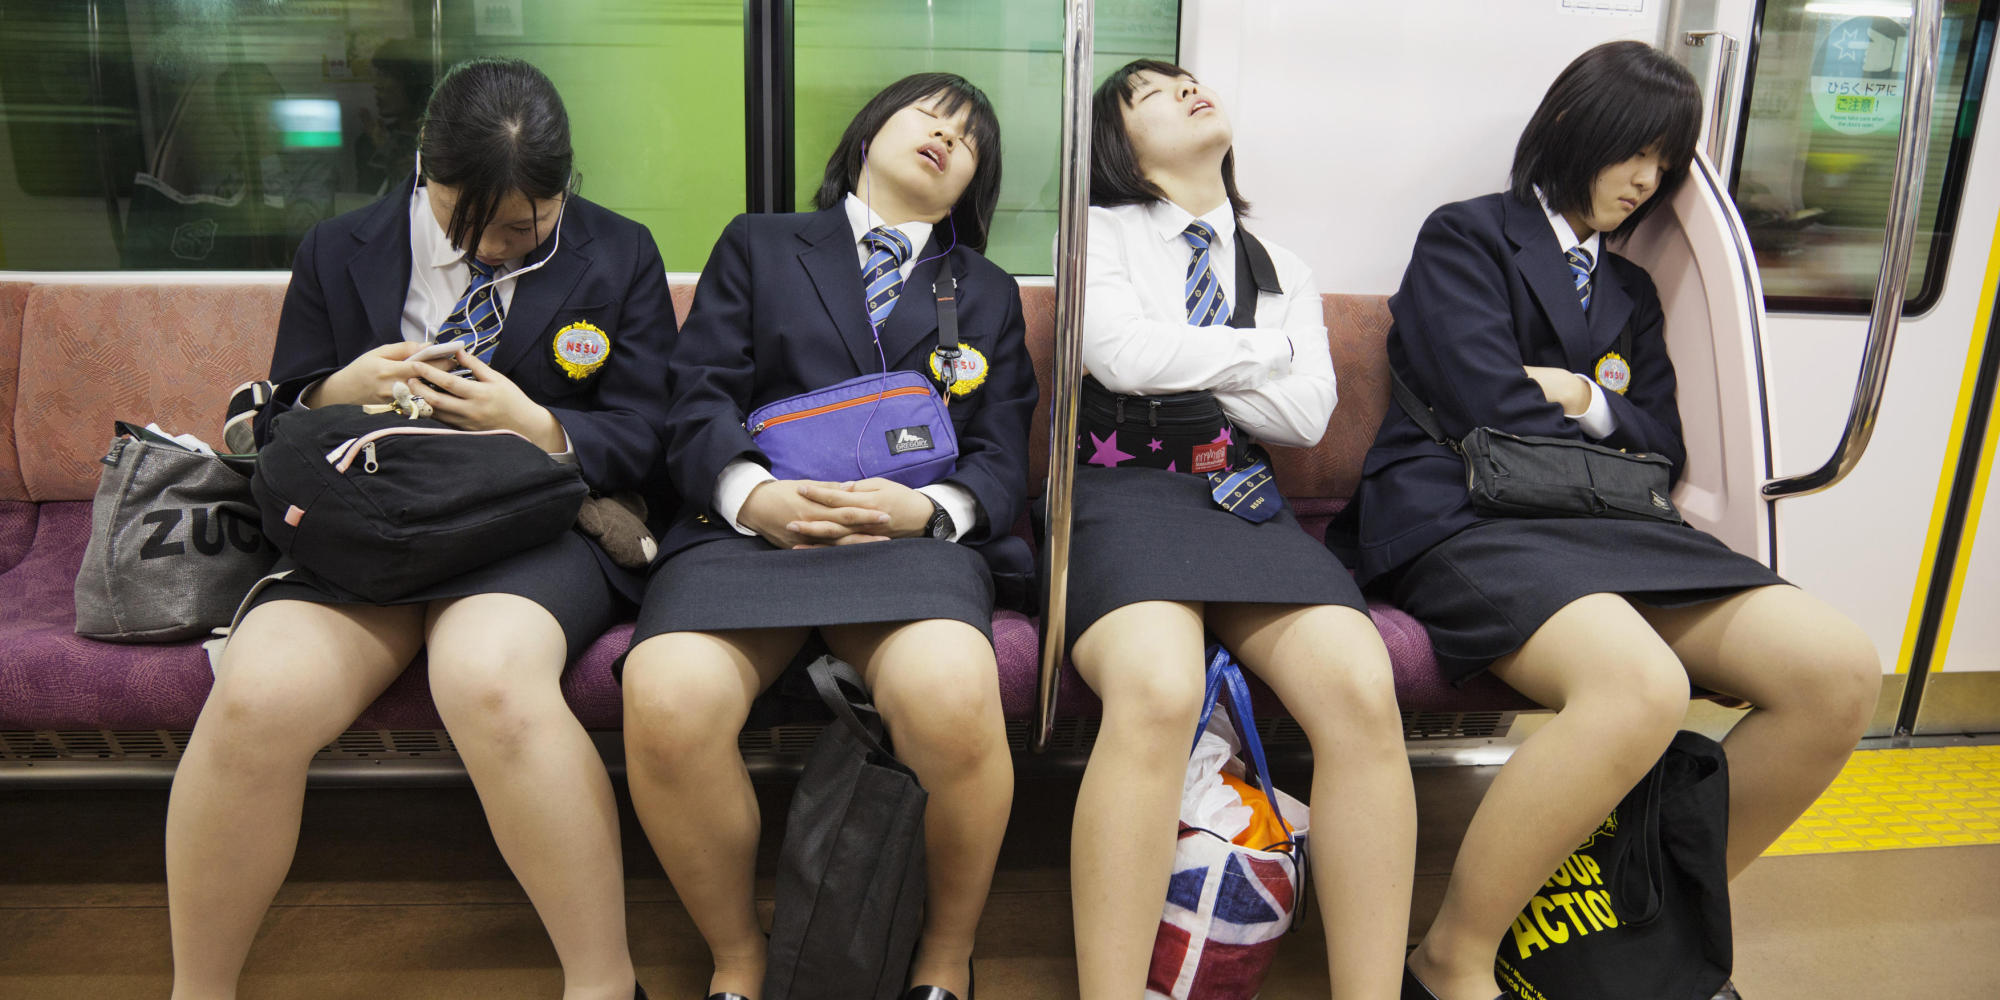 Лапаю япония. Японские девочки в транспорте. Японцы в общественном транспорте. Японочка в метро.